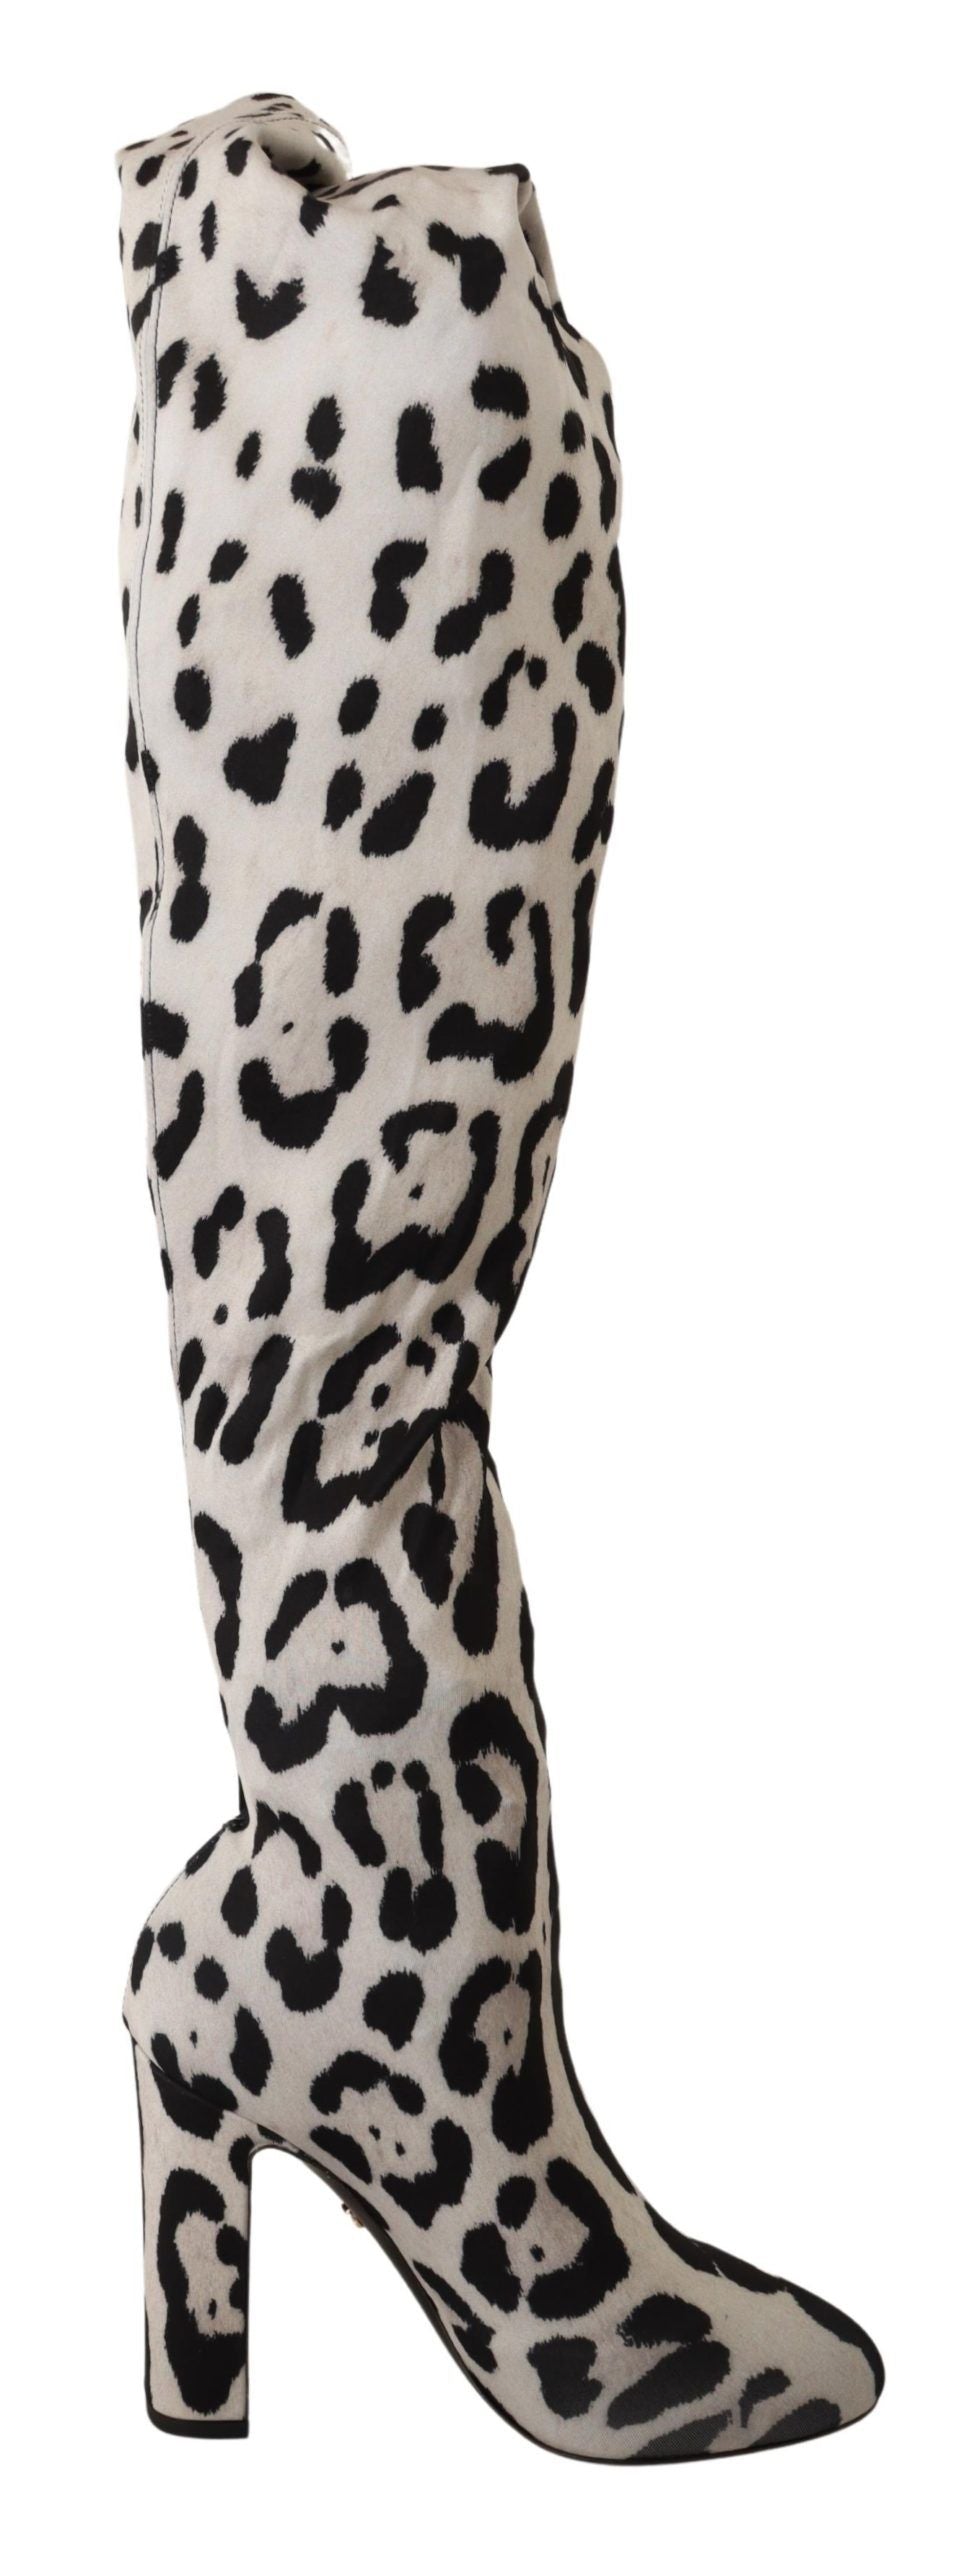 Chic Leopard High-Heel Over-Knee Boots